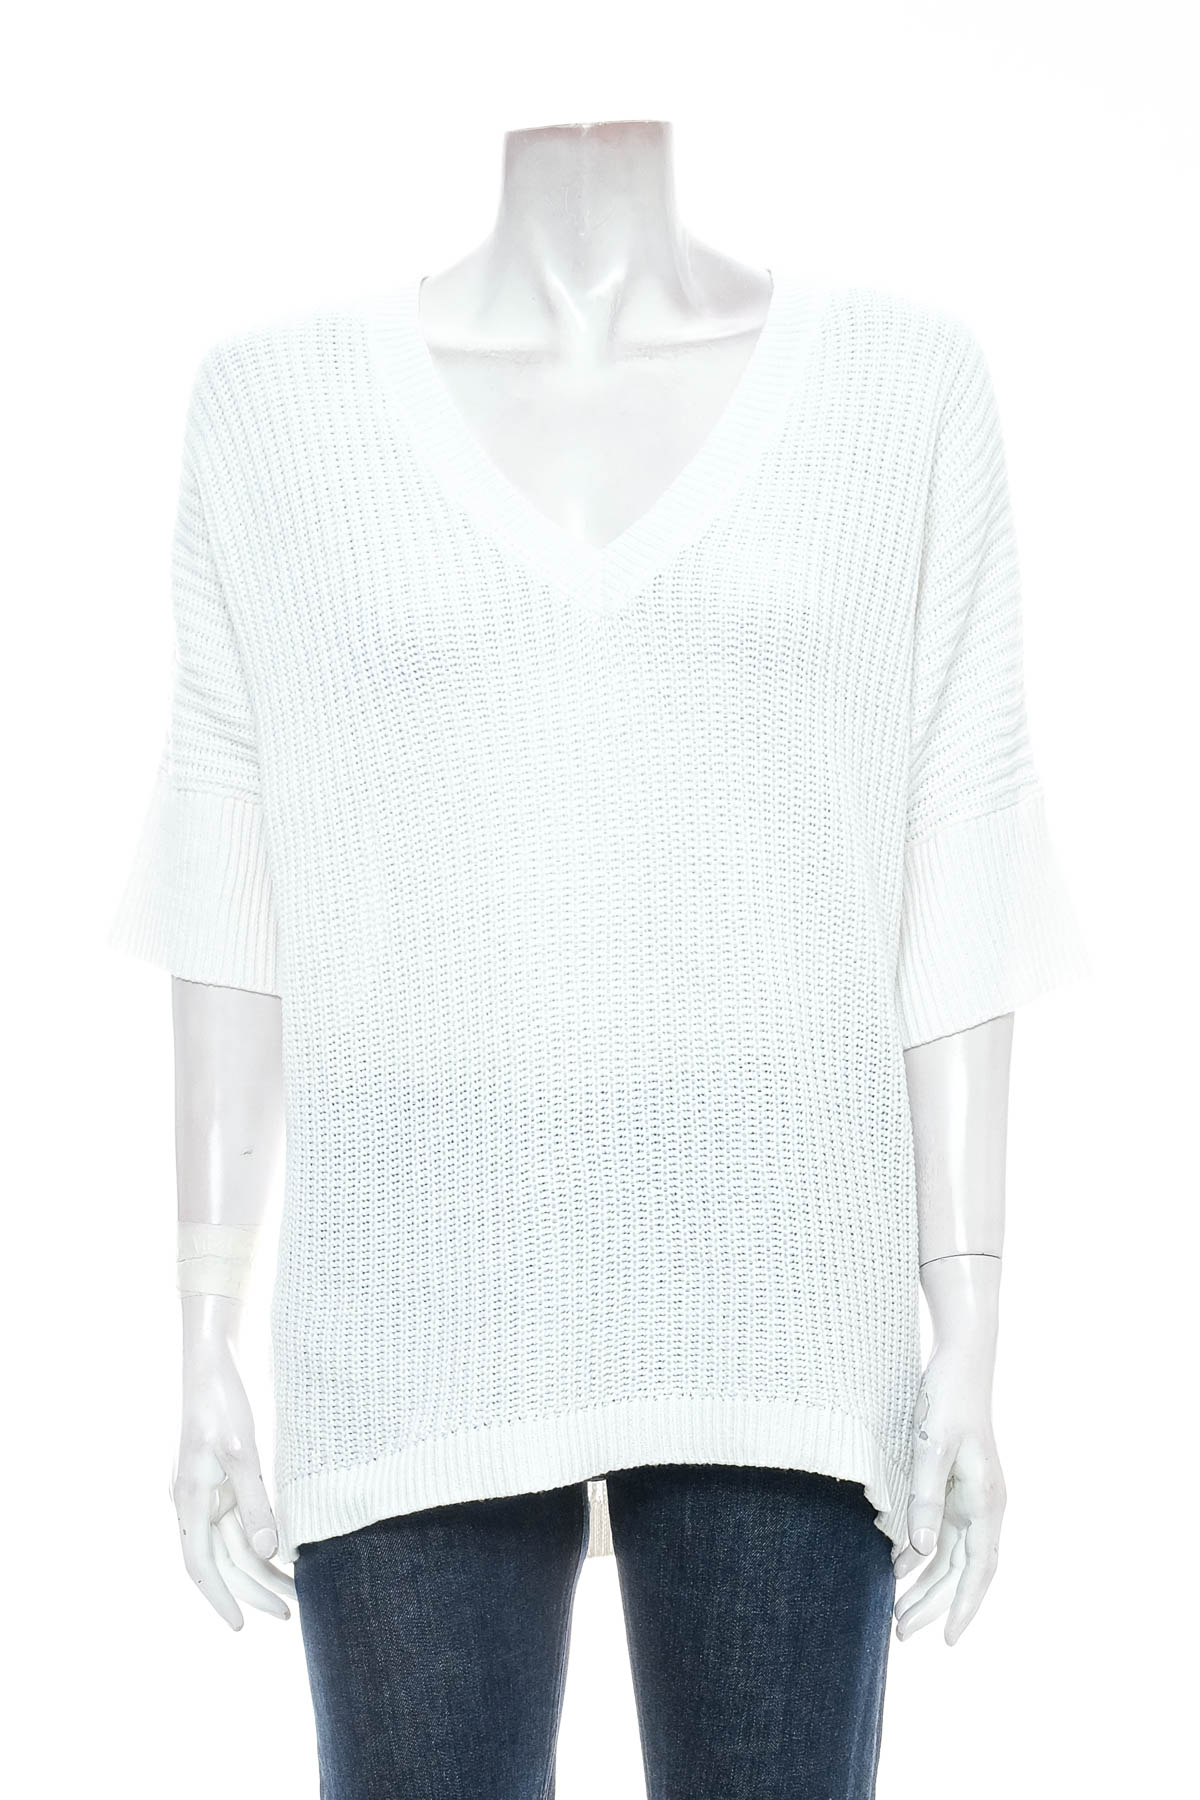 Γυναικείο πουλόβερ - Marled BY REUNITED CLOTHING - 0